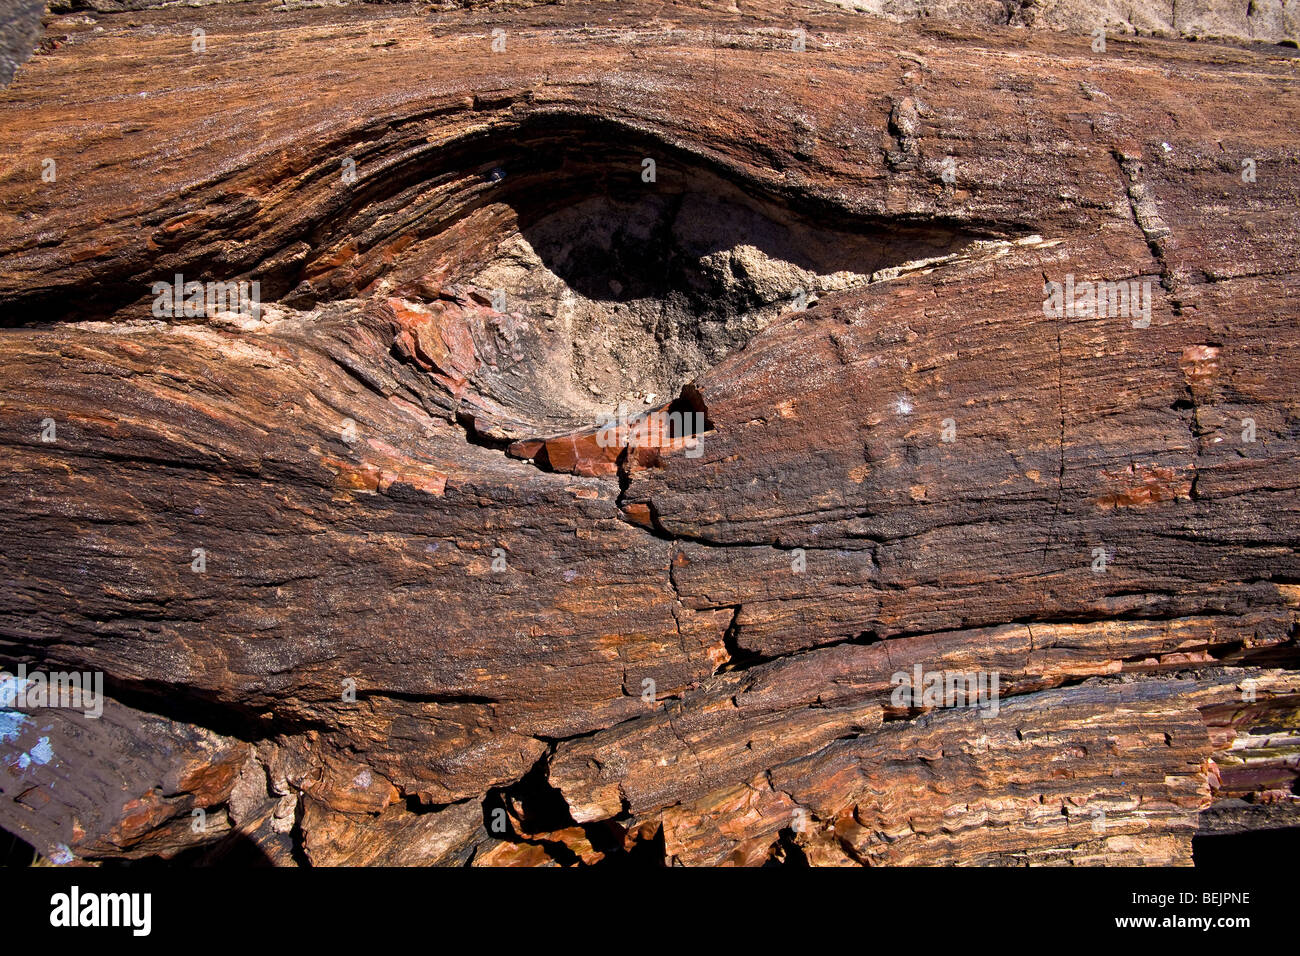 Le bois pétrifié, Arizona, États-Unis d'Amérique, Amérique du Nord Banque D'Images